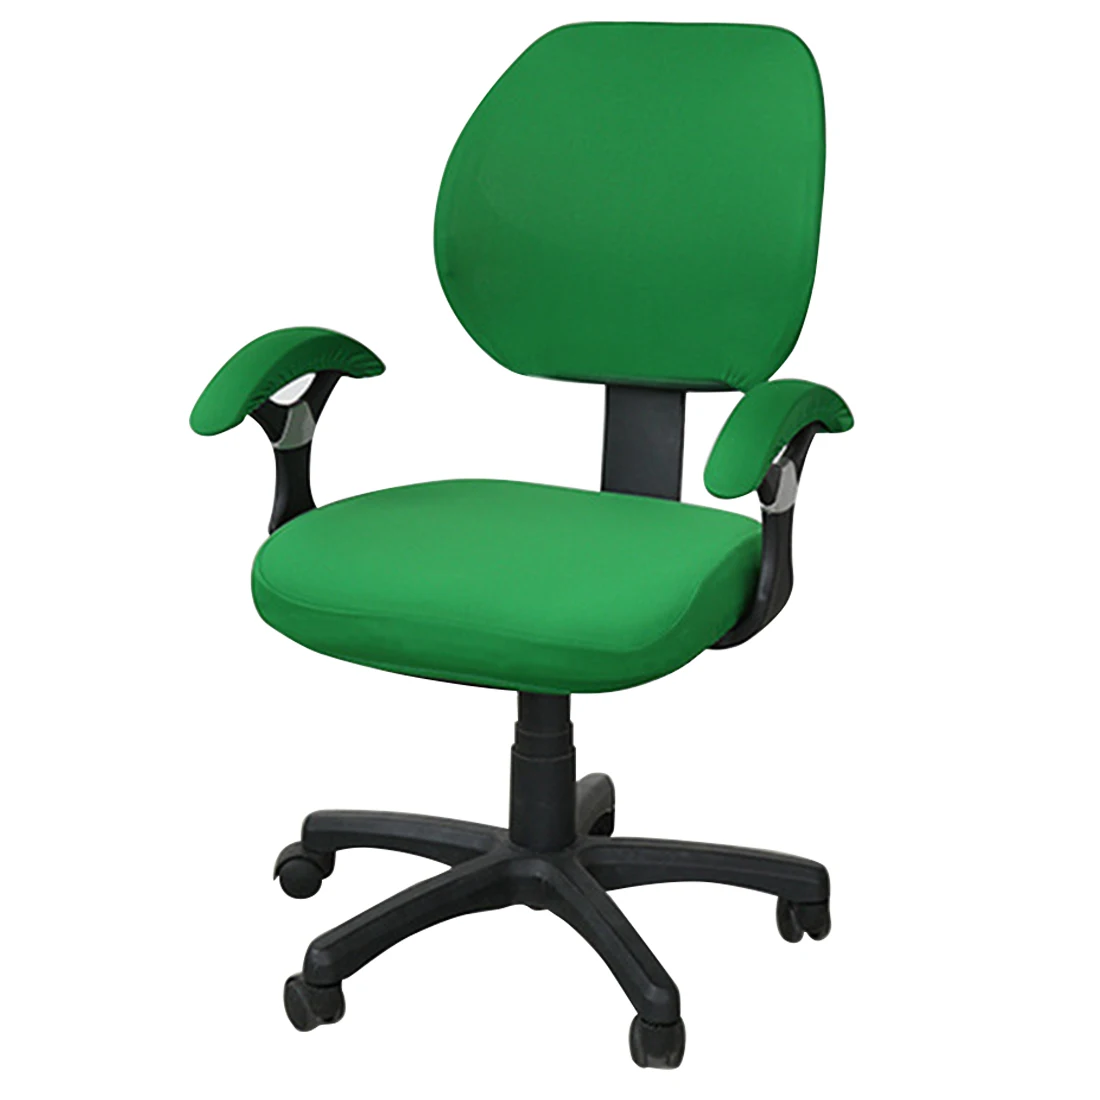 Горячая покрытия для офисных стульев спандекс компьютерное кресло подлокотник чехол цветочный принт Съемный вращающийся стрейч чехлы для стульев - Цвет: green